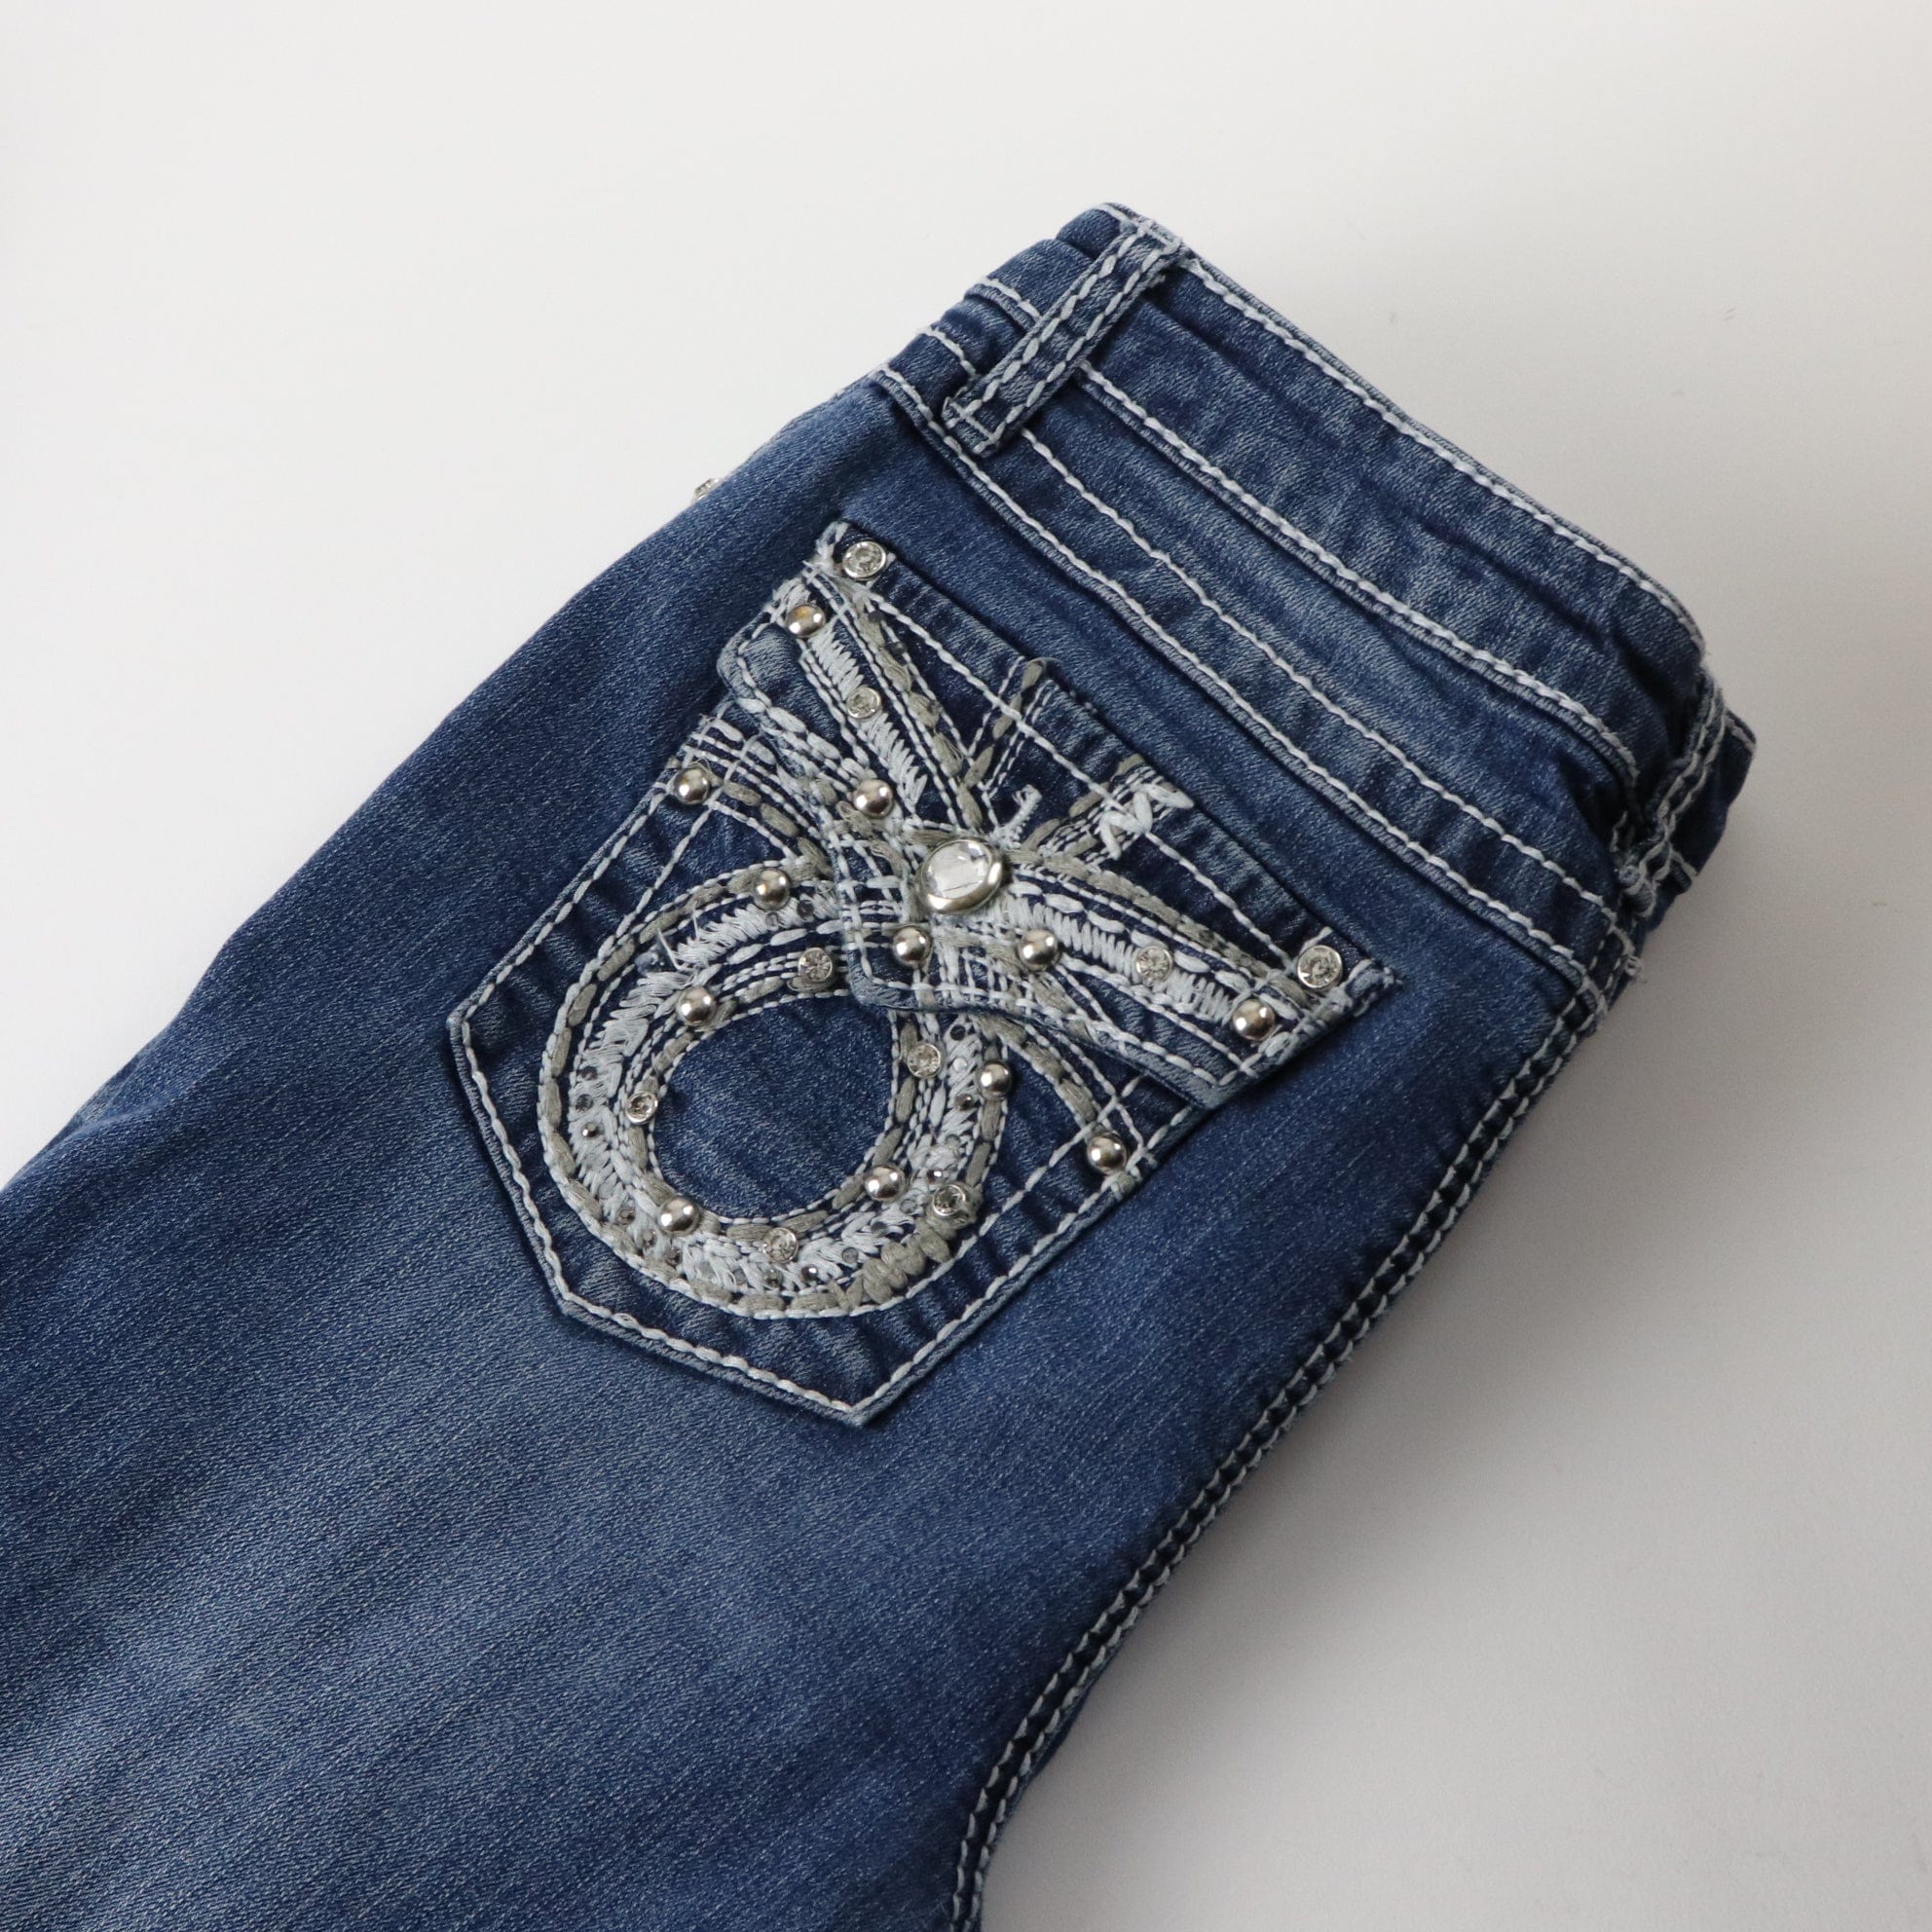 Earl Jean Embellished Low Rise Denim Jeans Women's Size 32 x 30